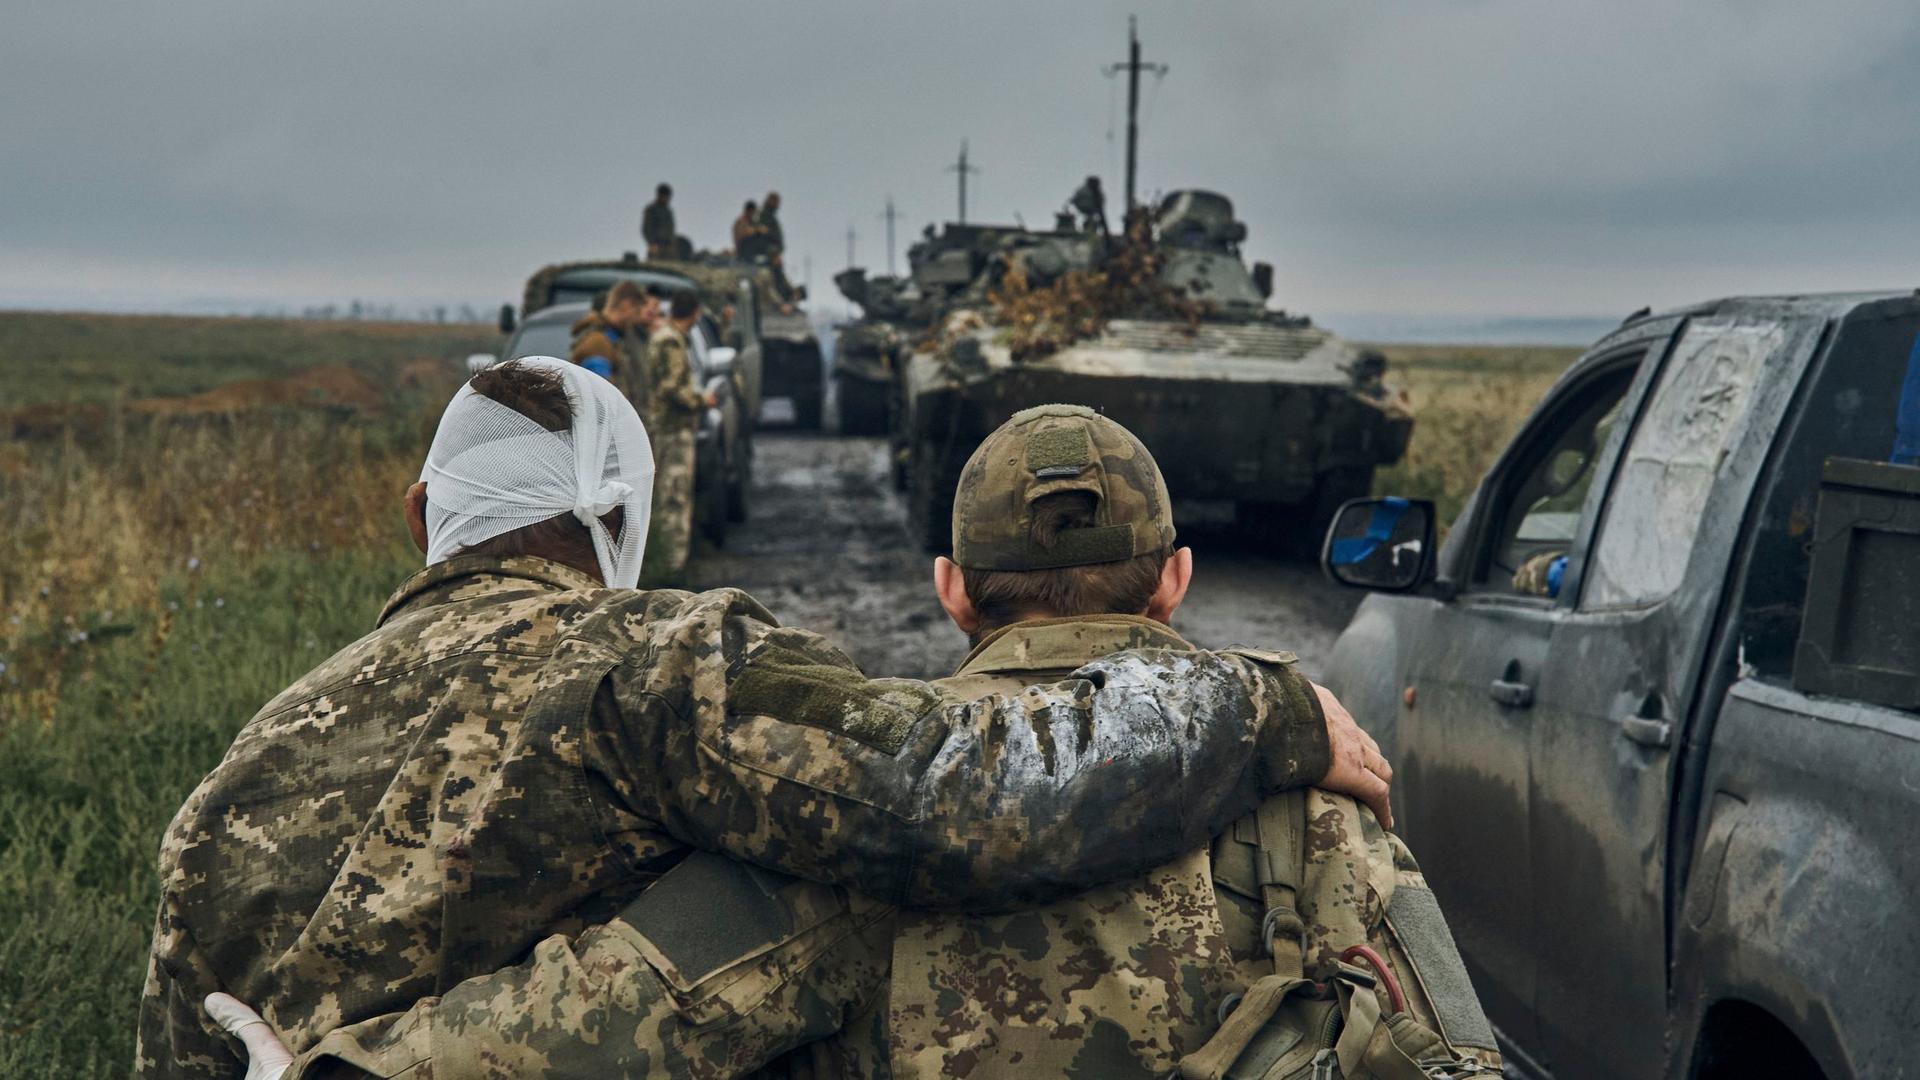 Das Foto zeigt, wie ein ukrainischer Soldat einem verletzten anderen Soldaten hilft.